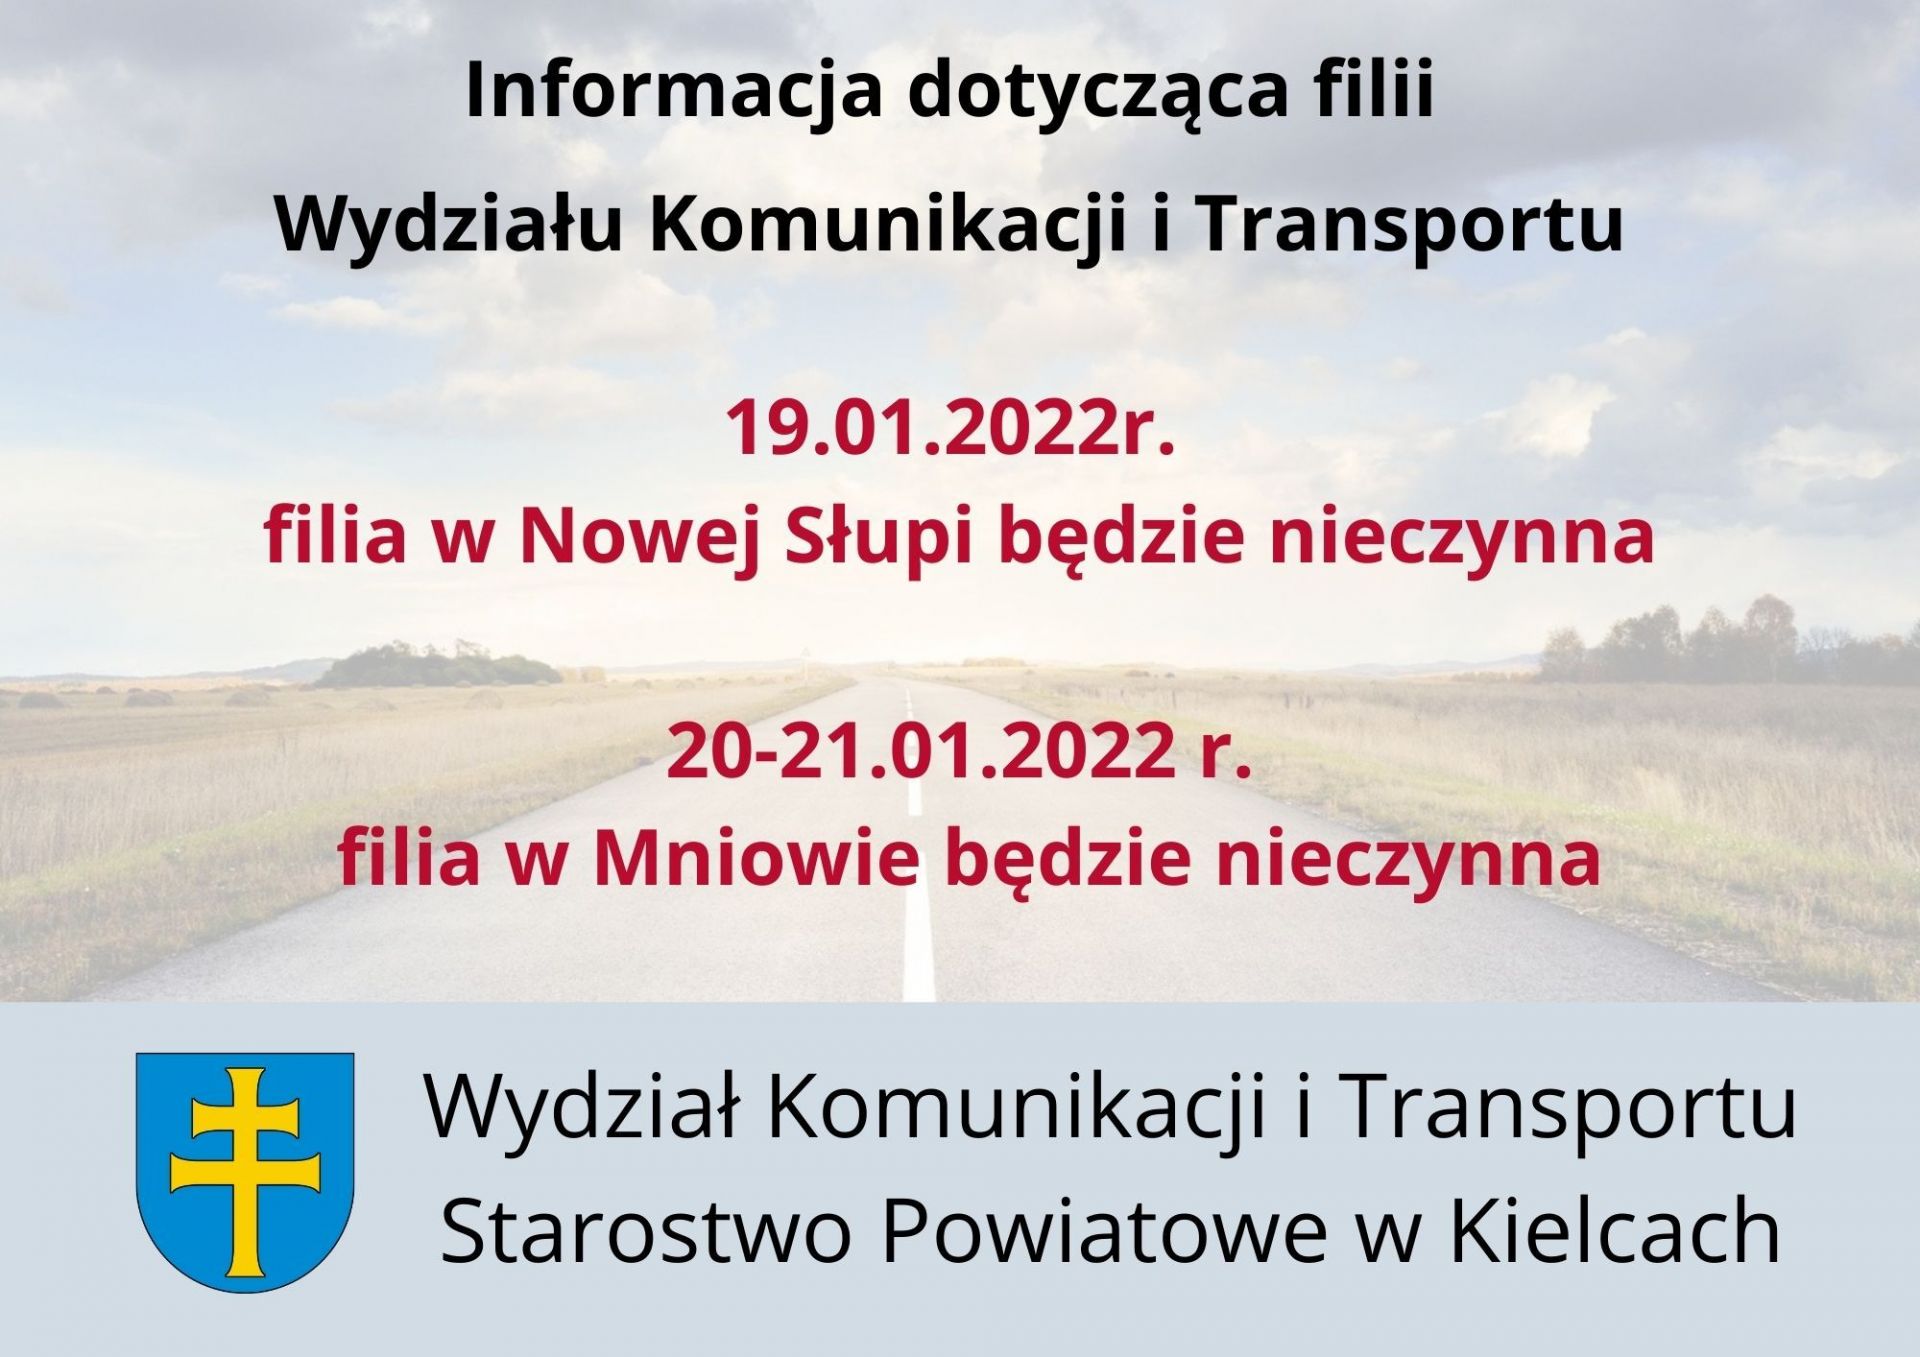 Wydział Komunikacji i Transportu Starostwa Powiatowego w Kielcach informuje